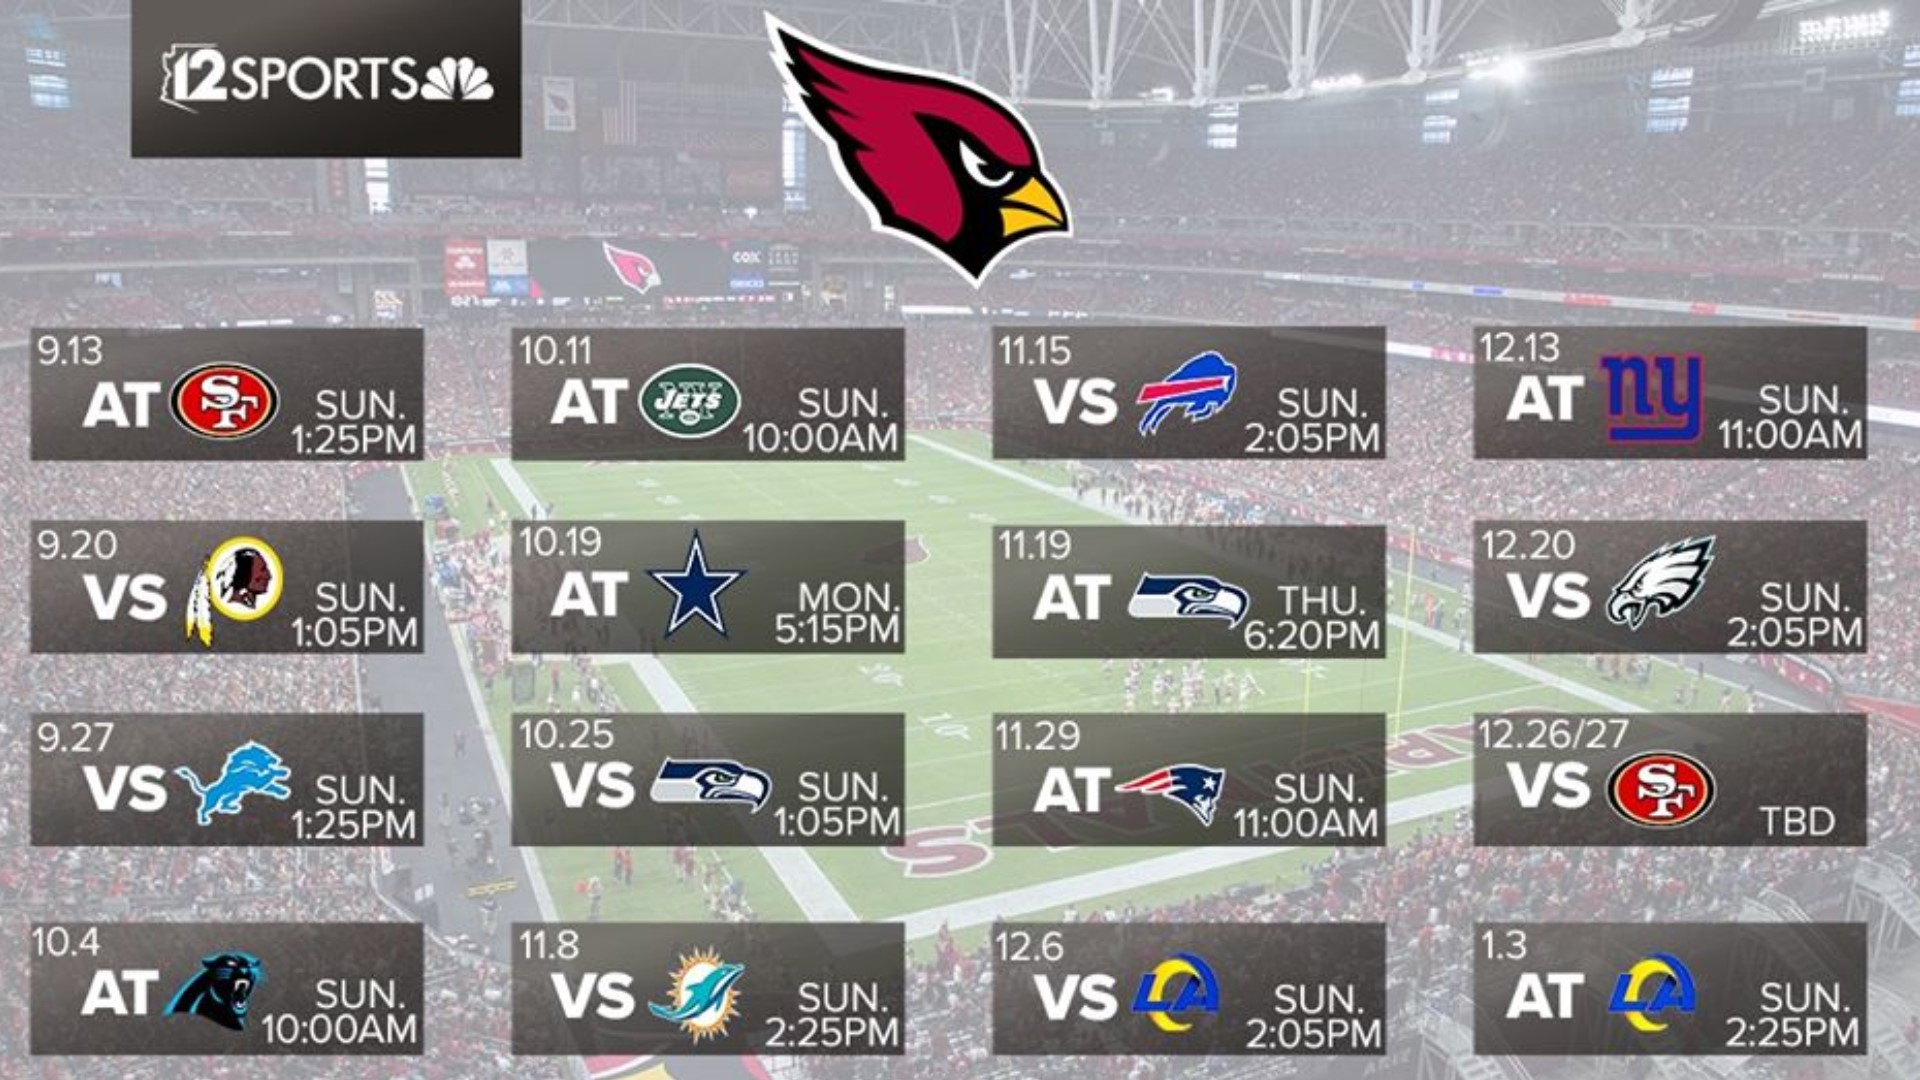 Arizona Cardinals 2020 NFL schedule released